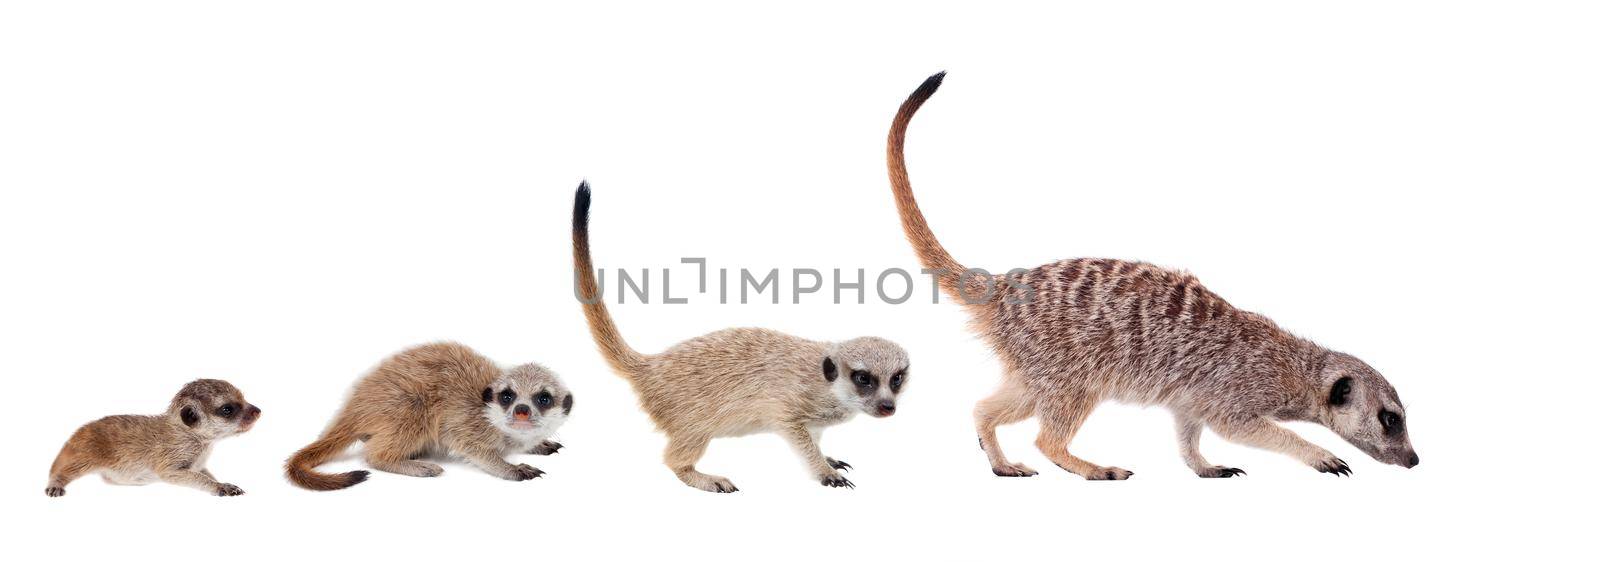 The meerkats or suricates, Suricata suricatta, isolated on white